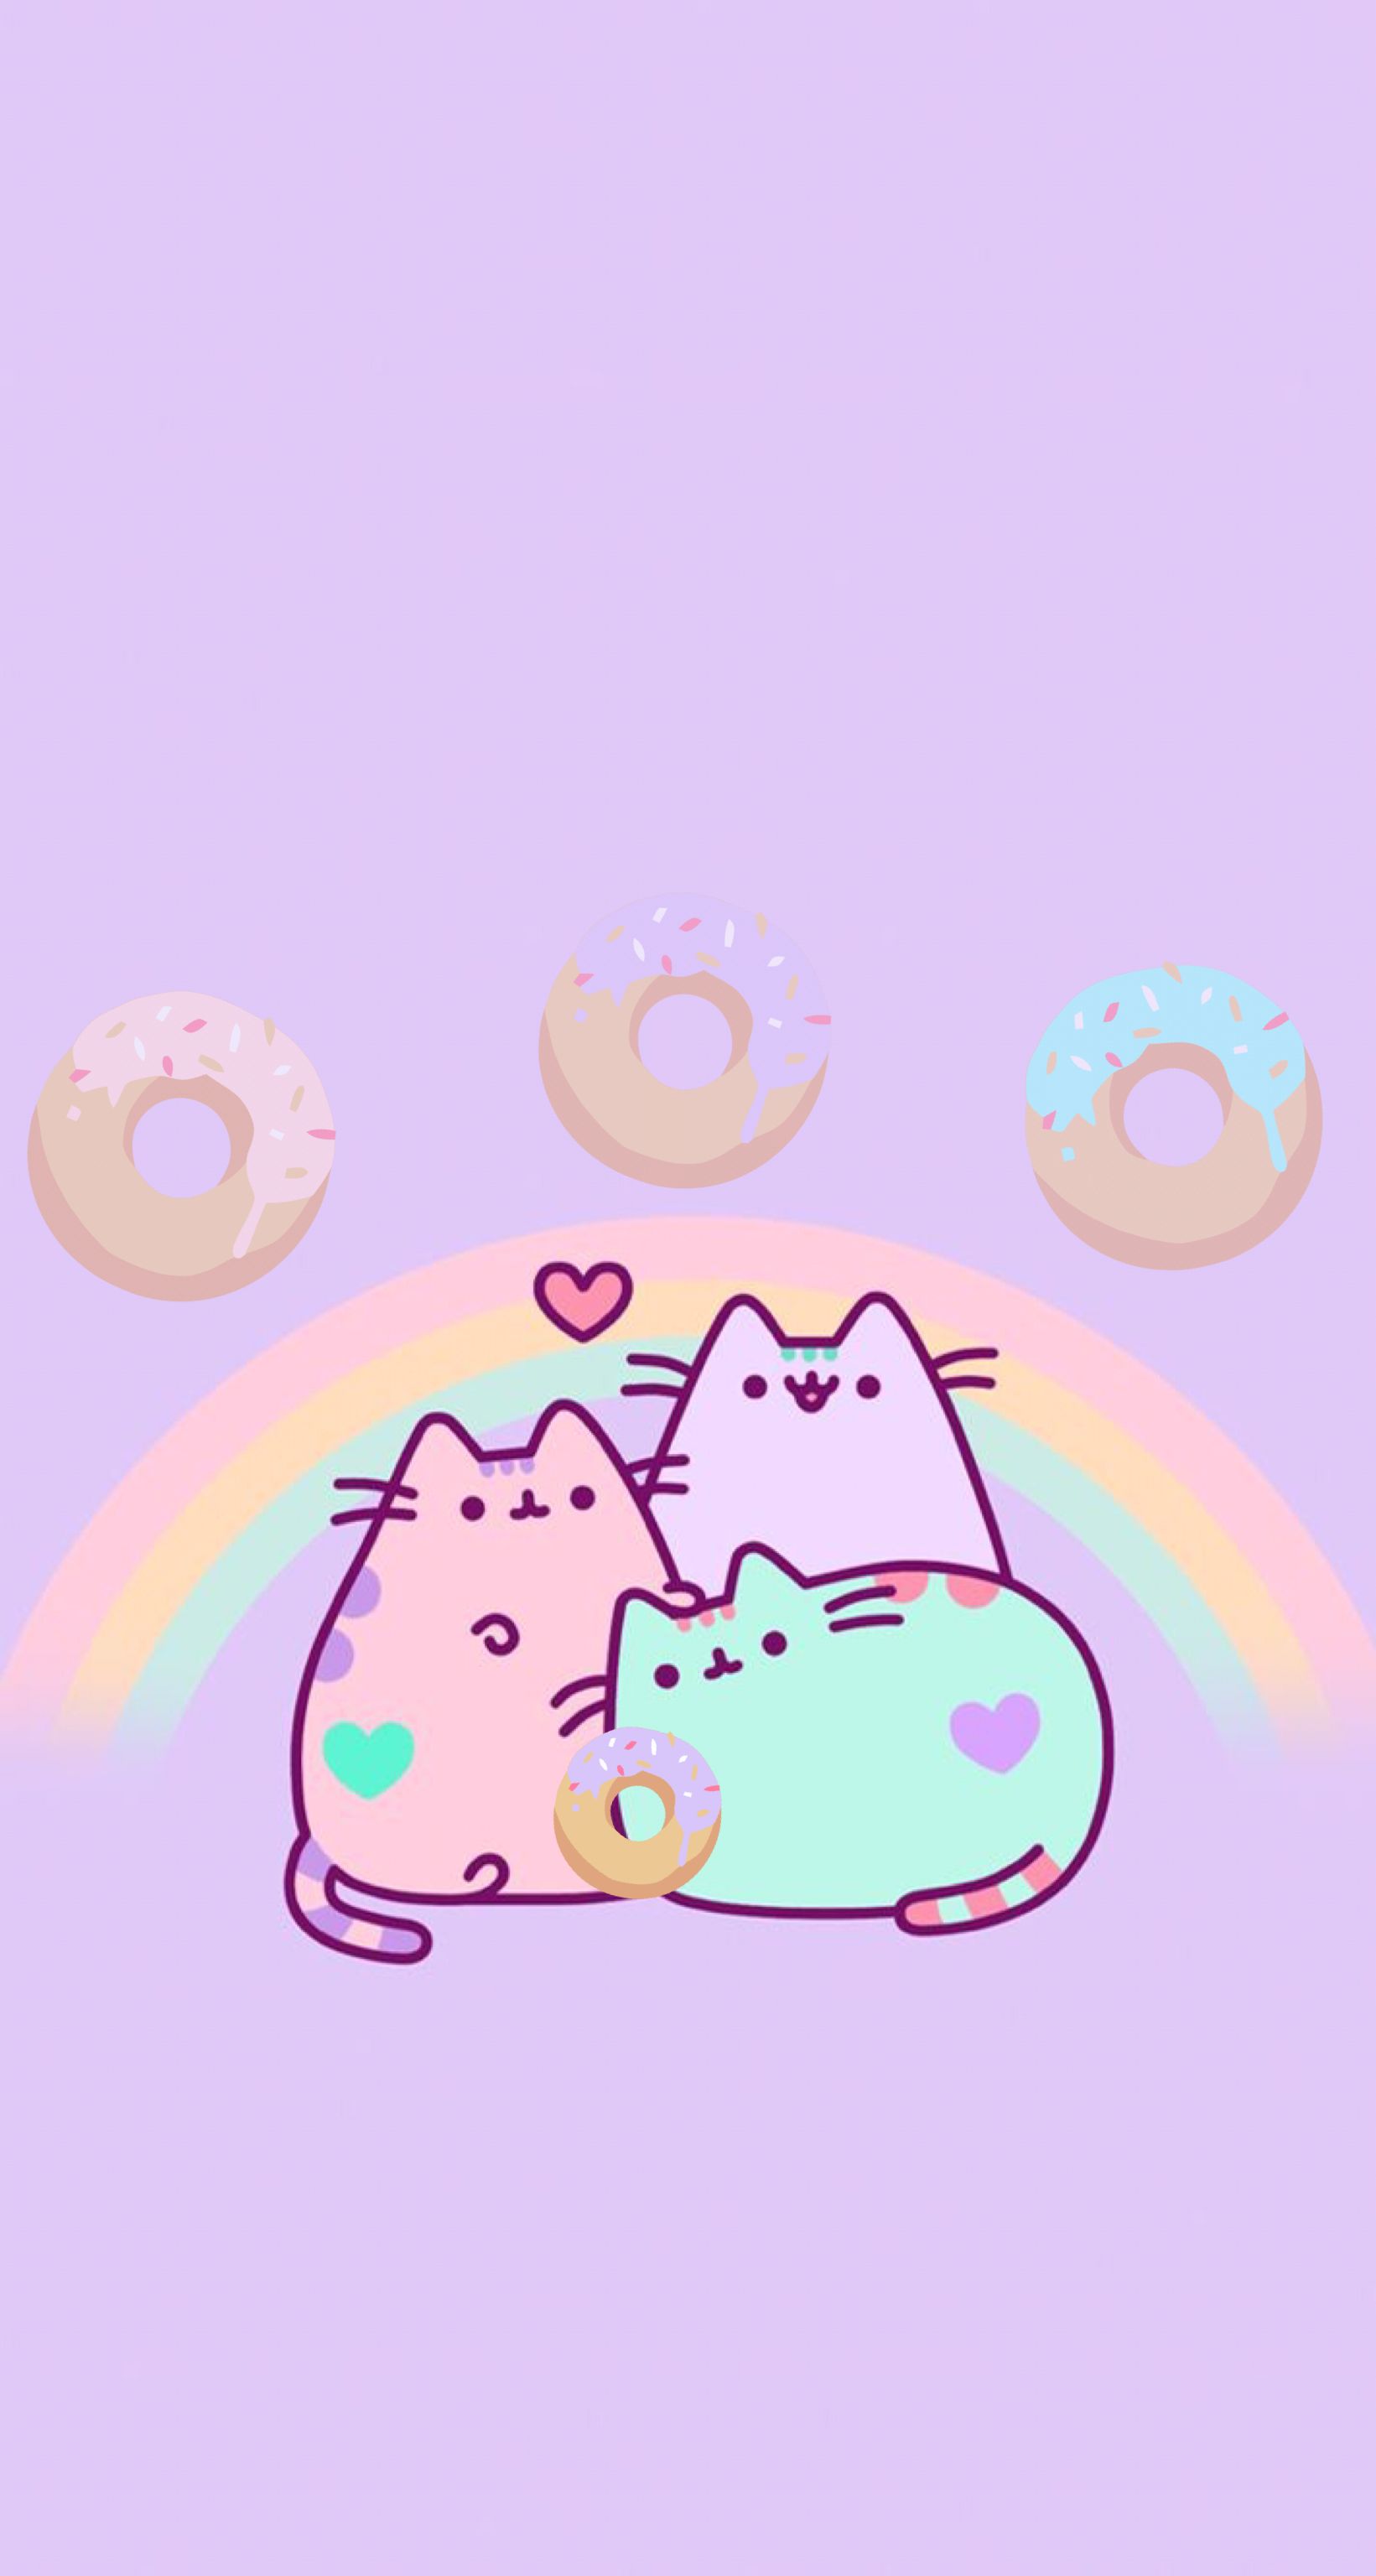 Pusheen Rainbow. Pusheen cat. Pusheen, Pusheen love